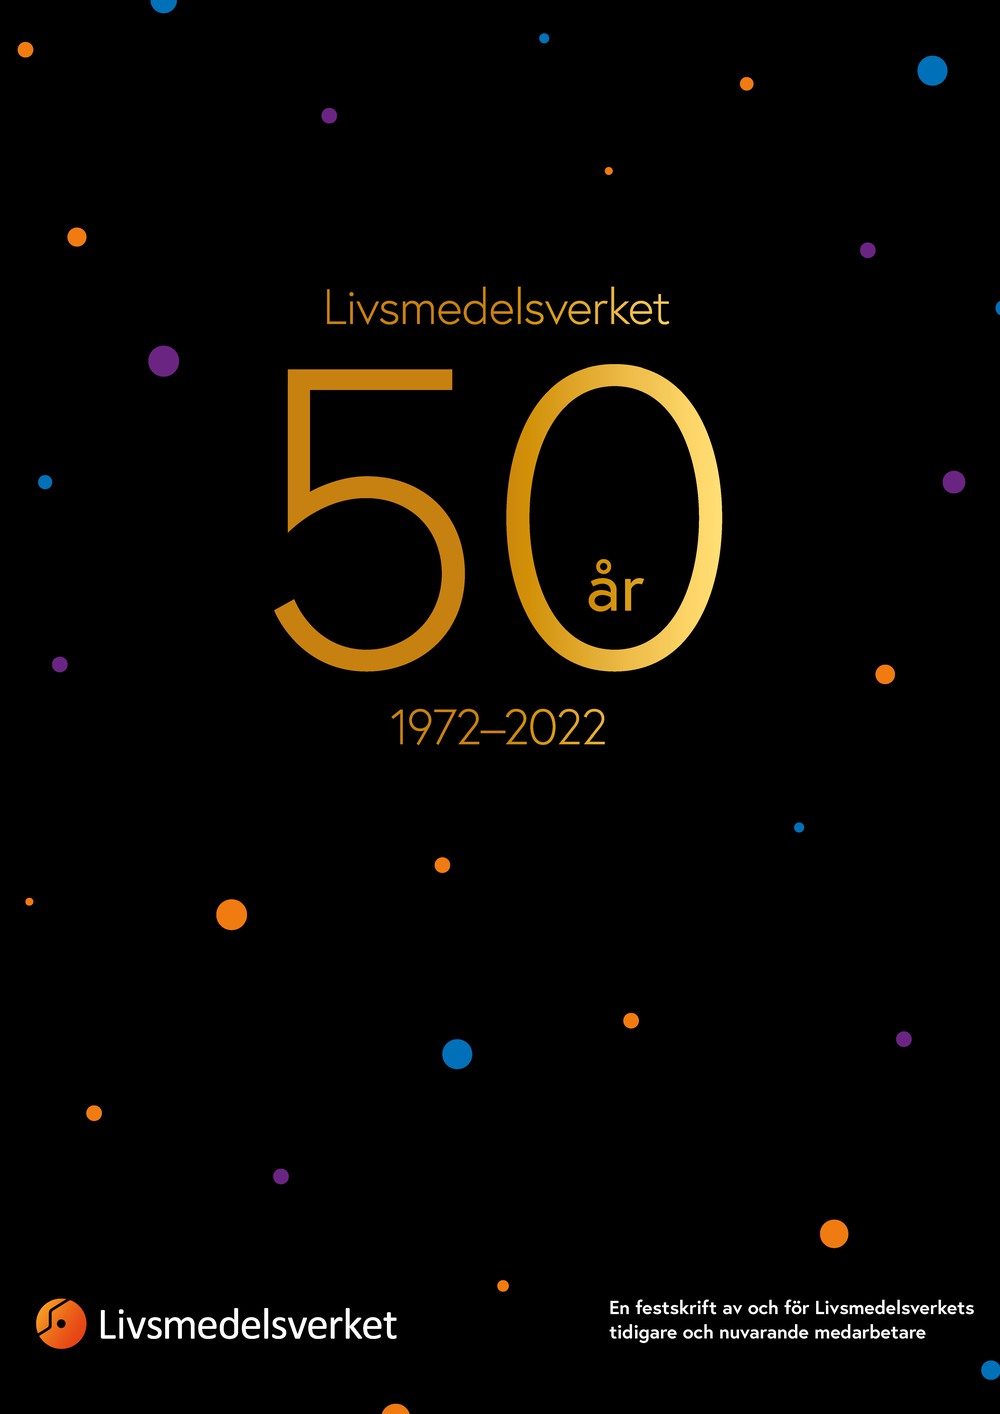 Framsidan av festskriften Livsmedelsverket 50 år.